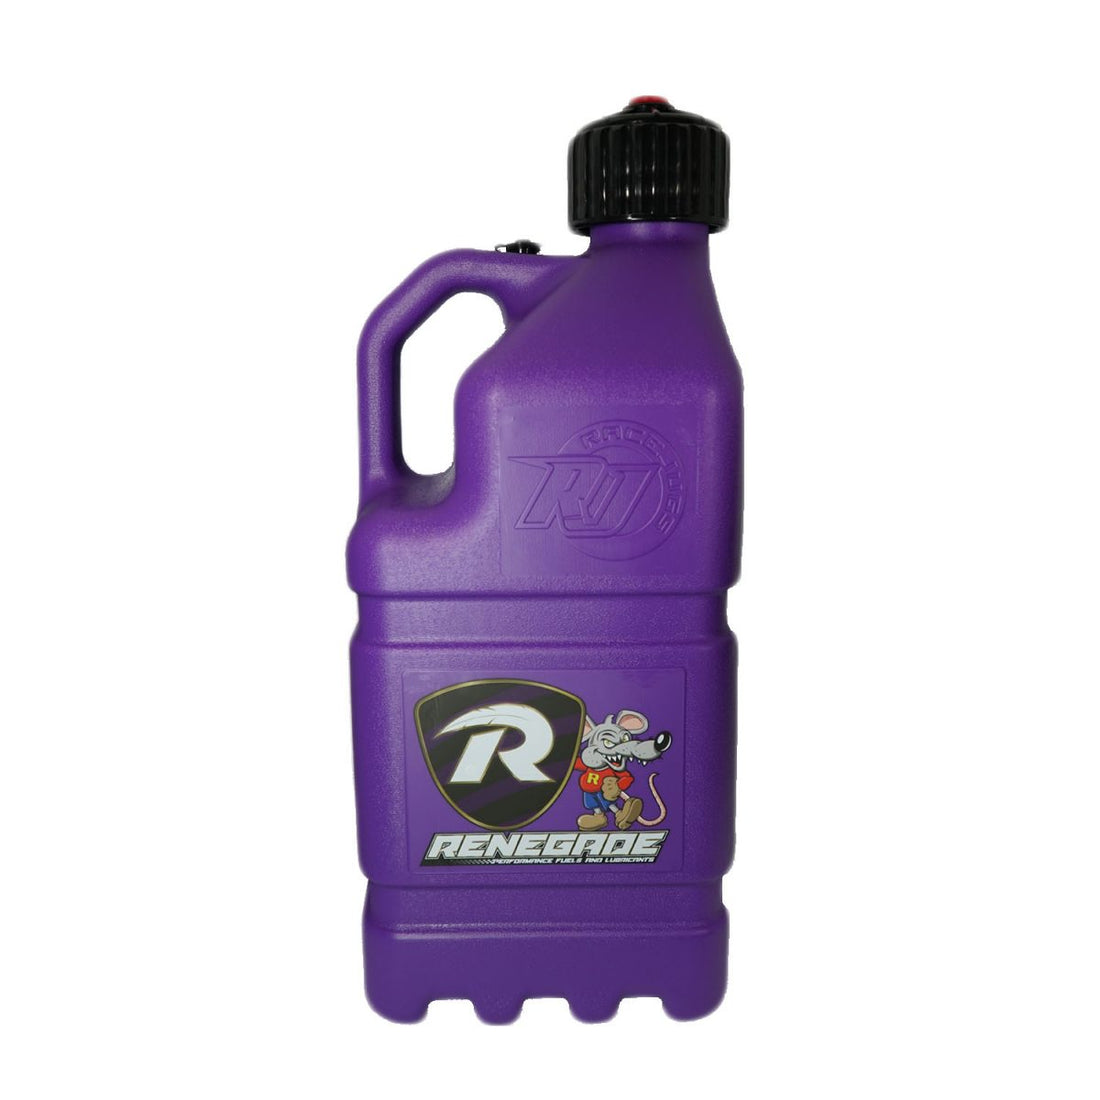 renegade motorsport fuel jug 20l with pouring spout